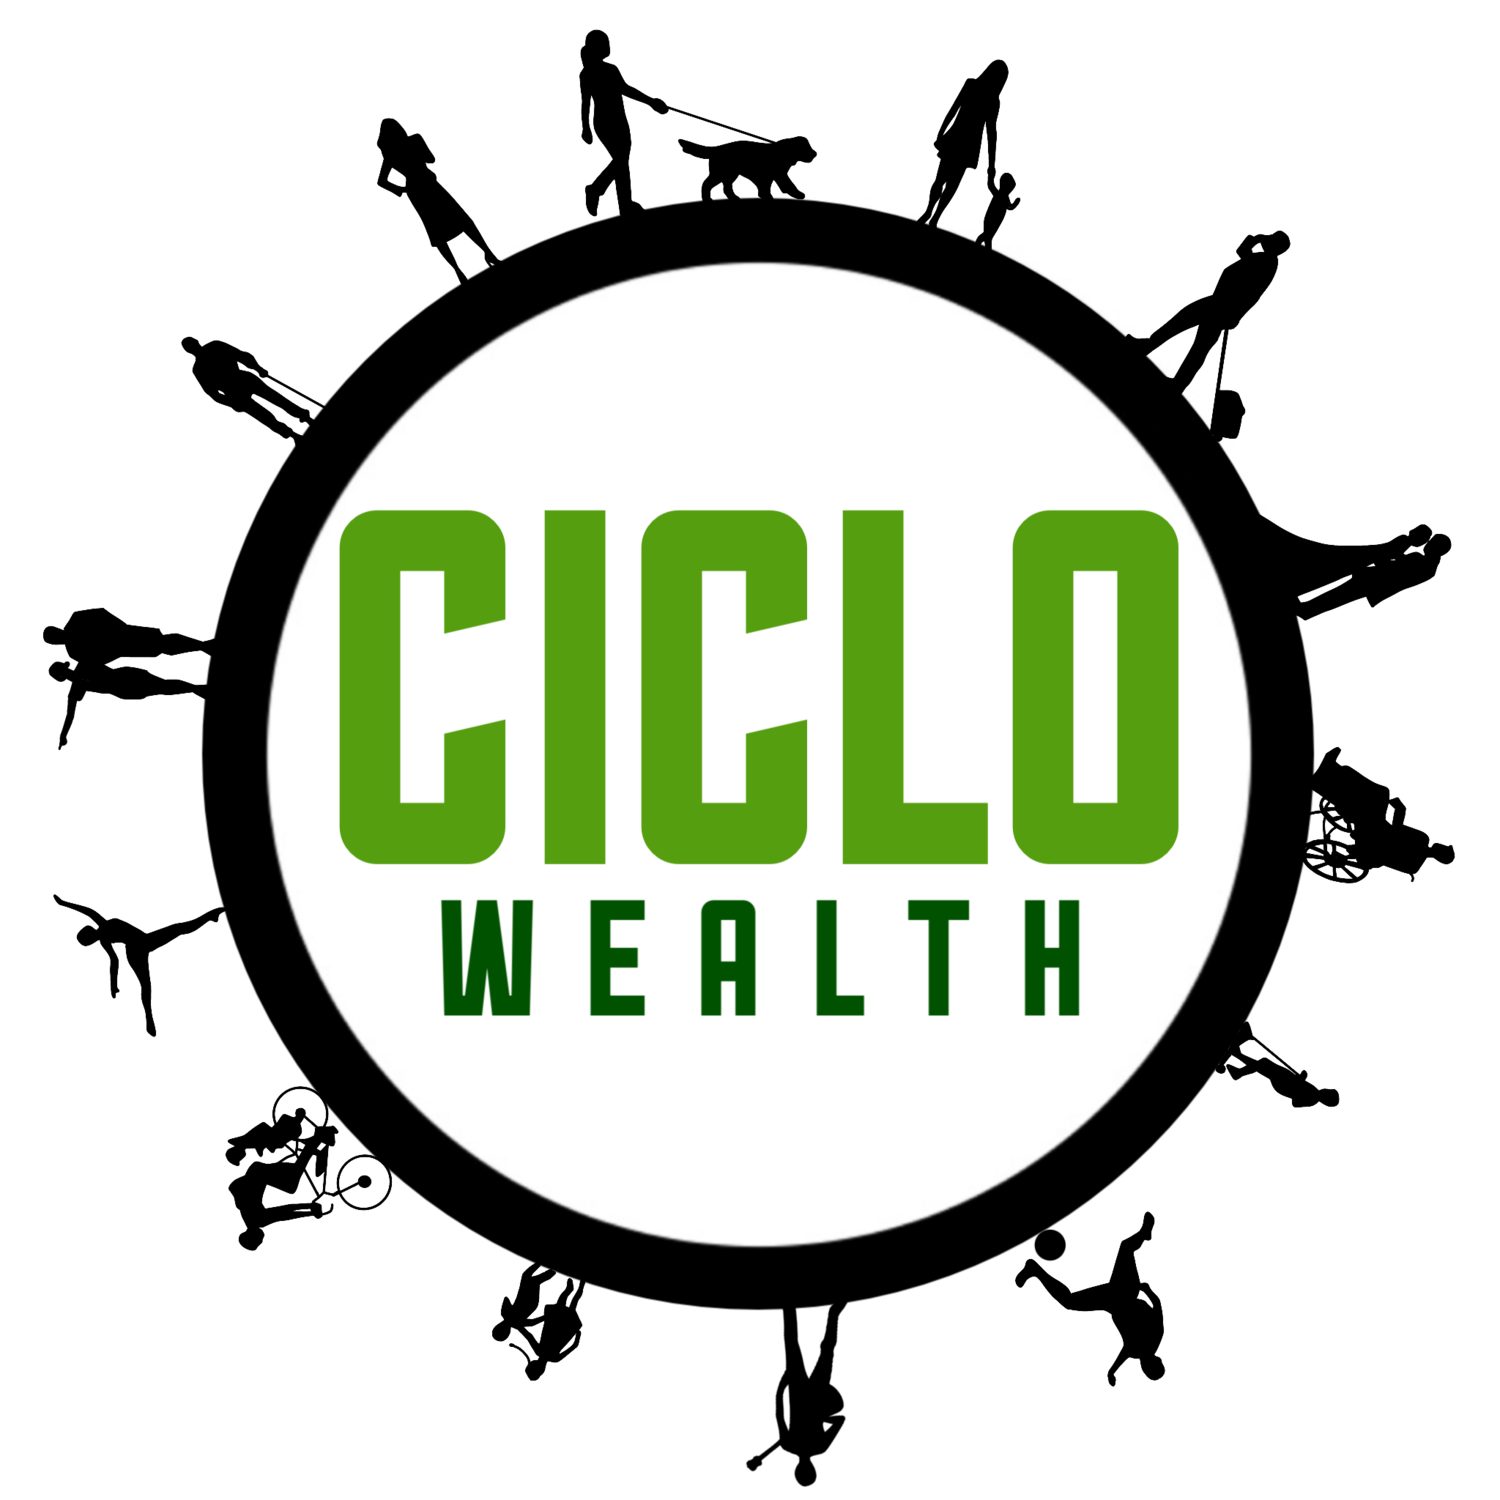 Ciclo Wealth